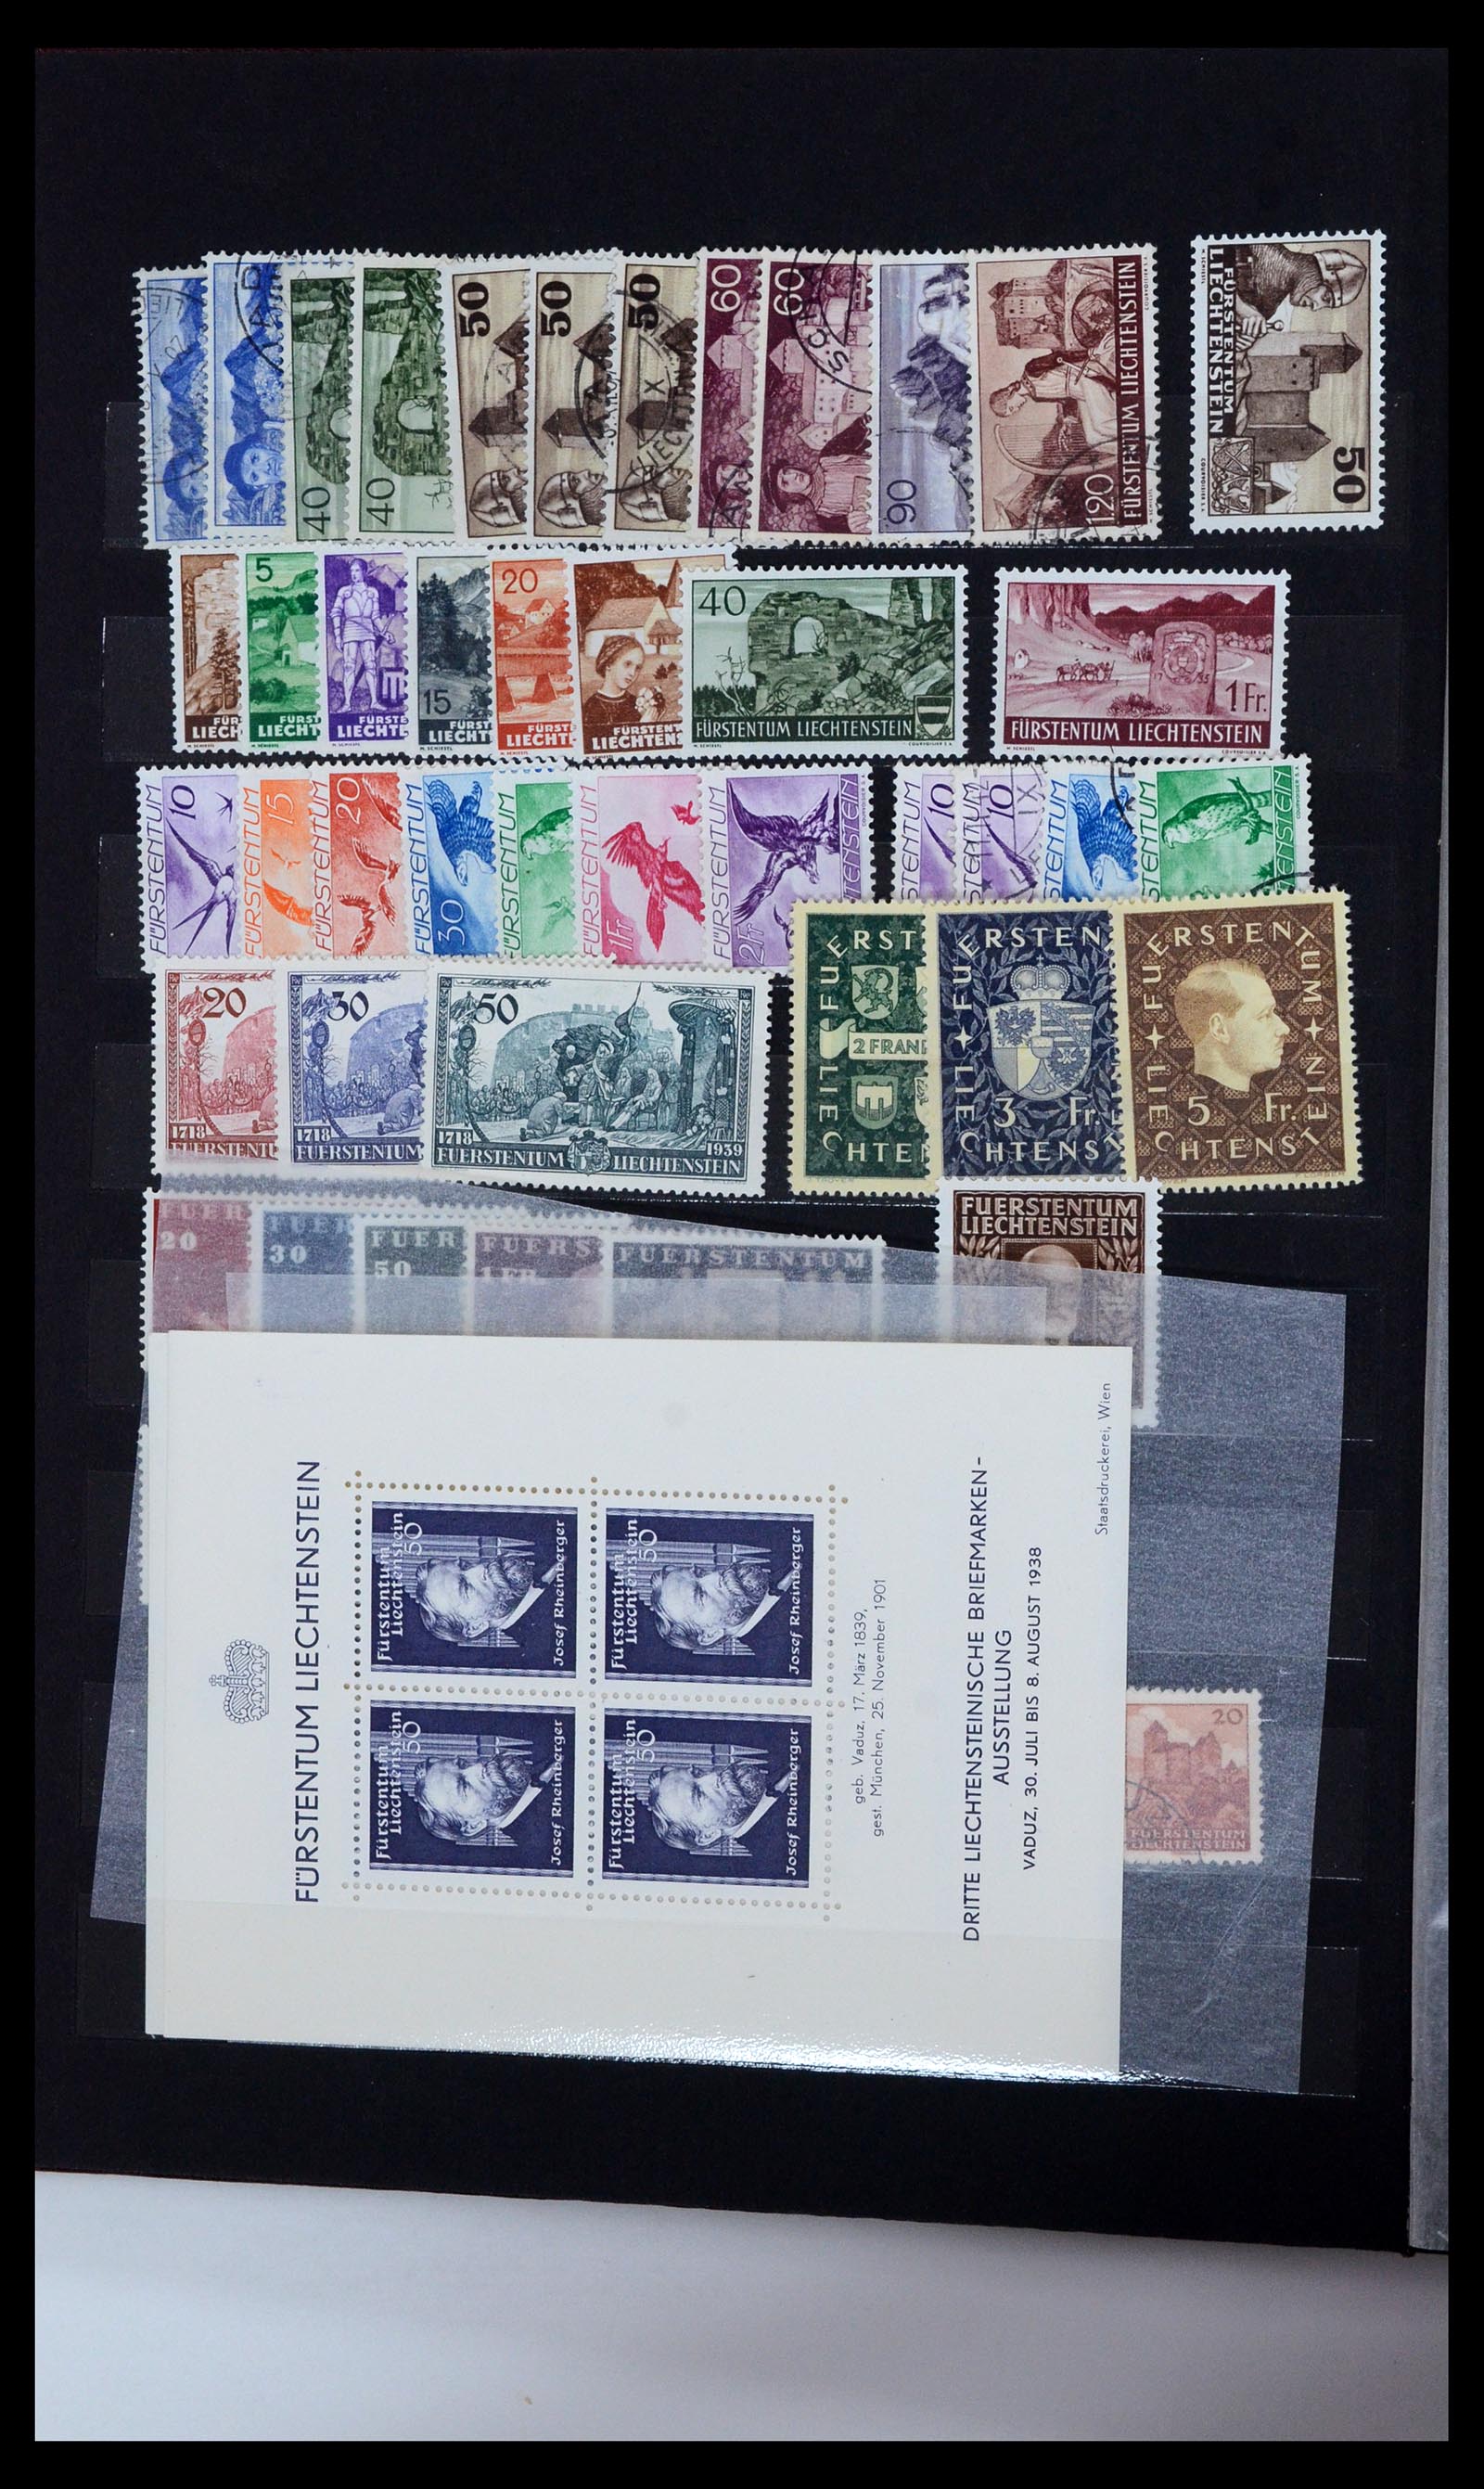 36697 023 - Stamp collection 36697 Liechtenstein 1912-1985.